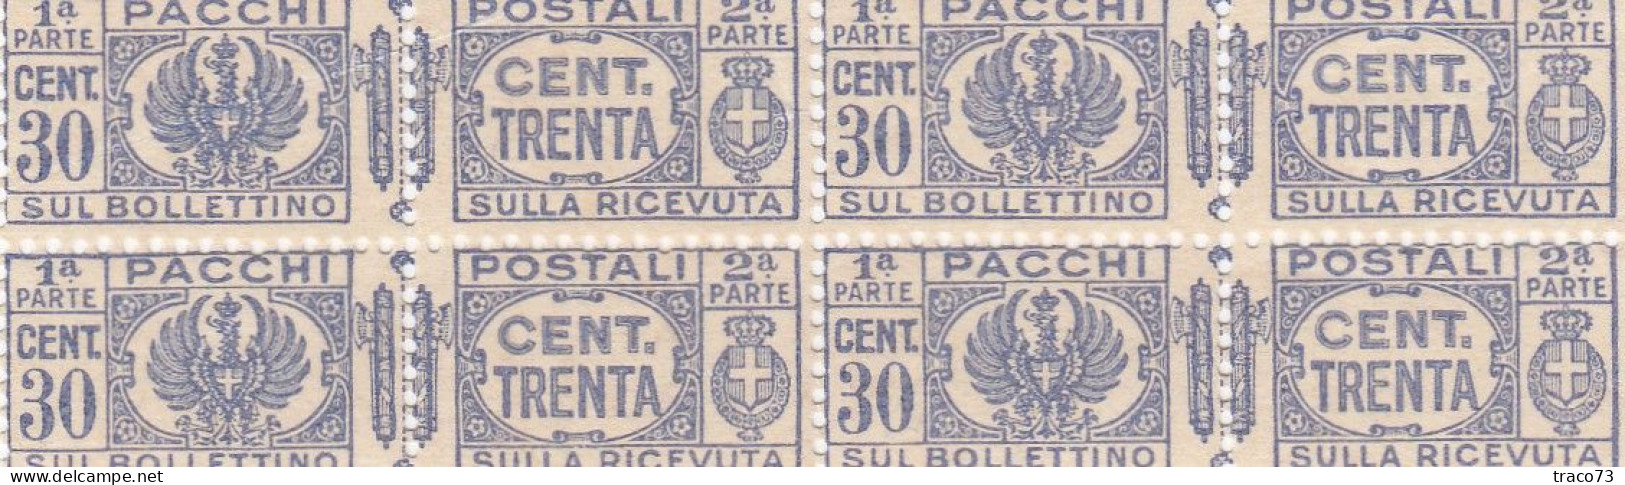 PACCHI POSTALI   /  Cent. 30 X 4 - Postal Parcels